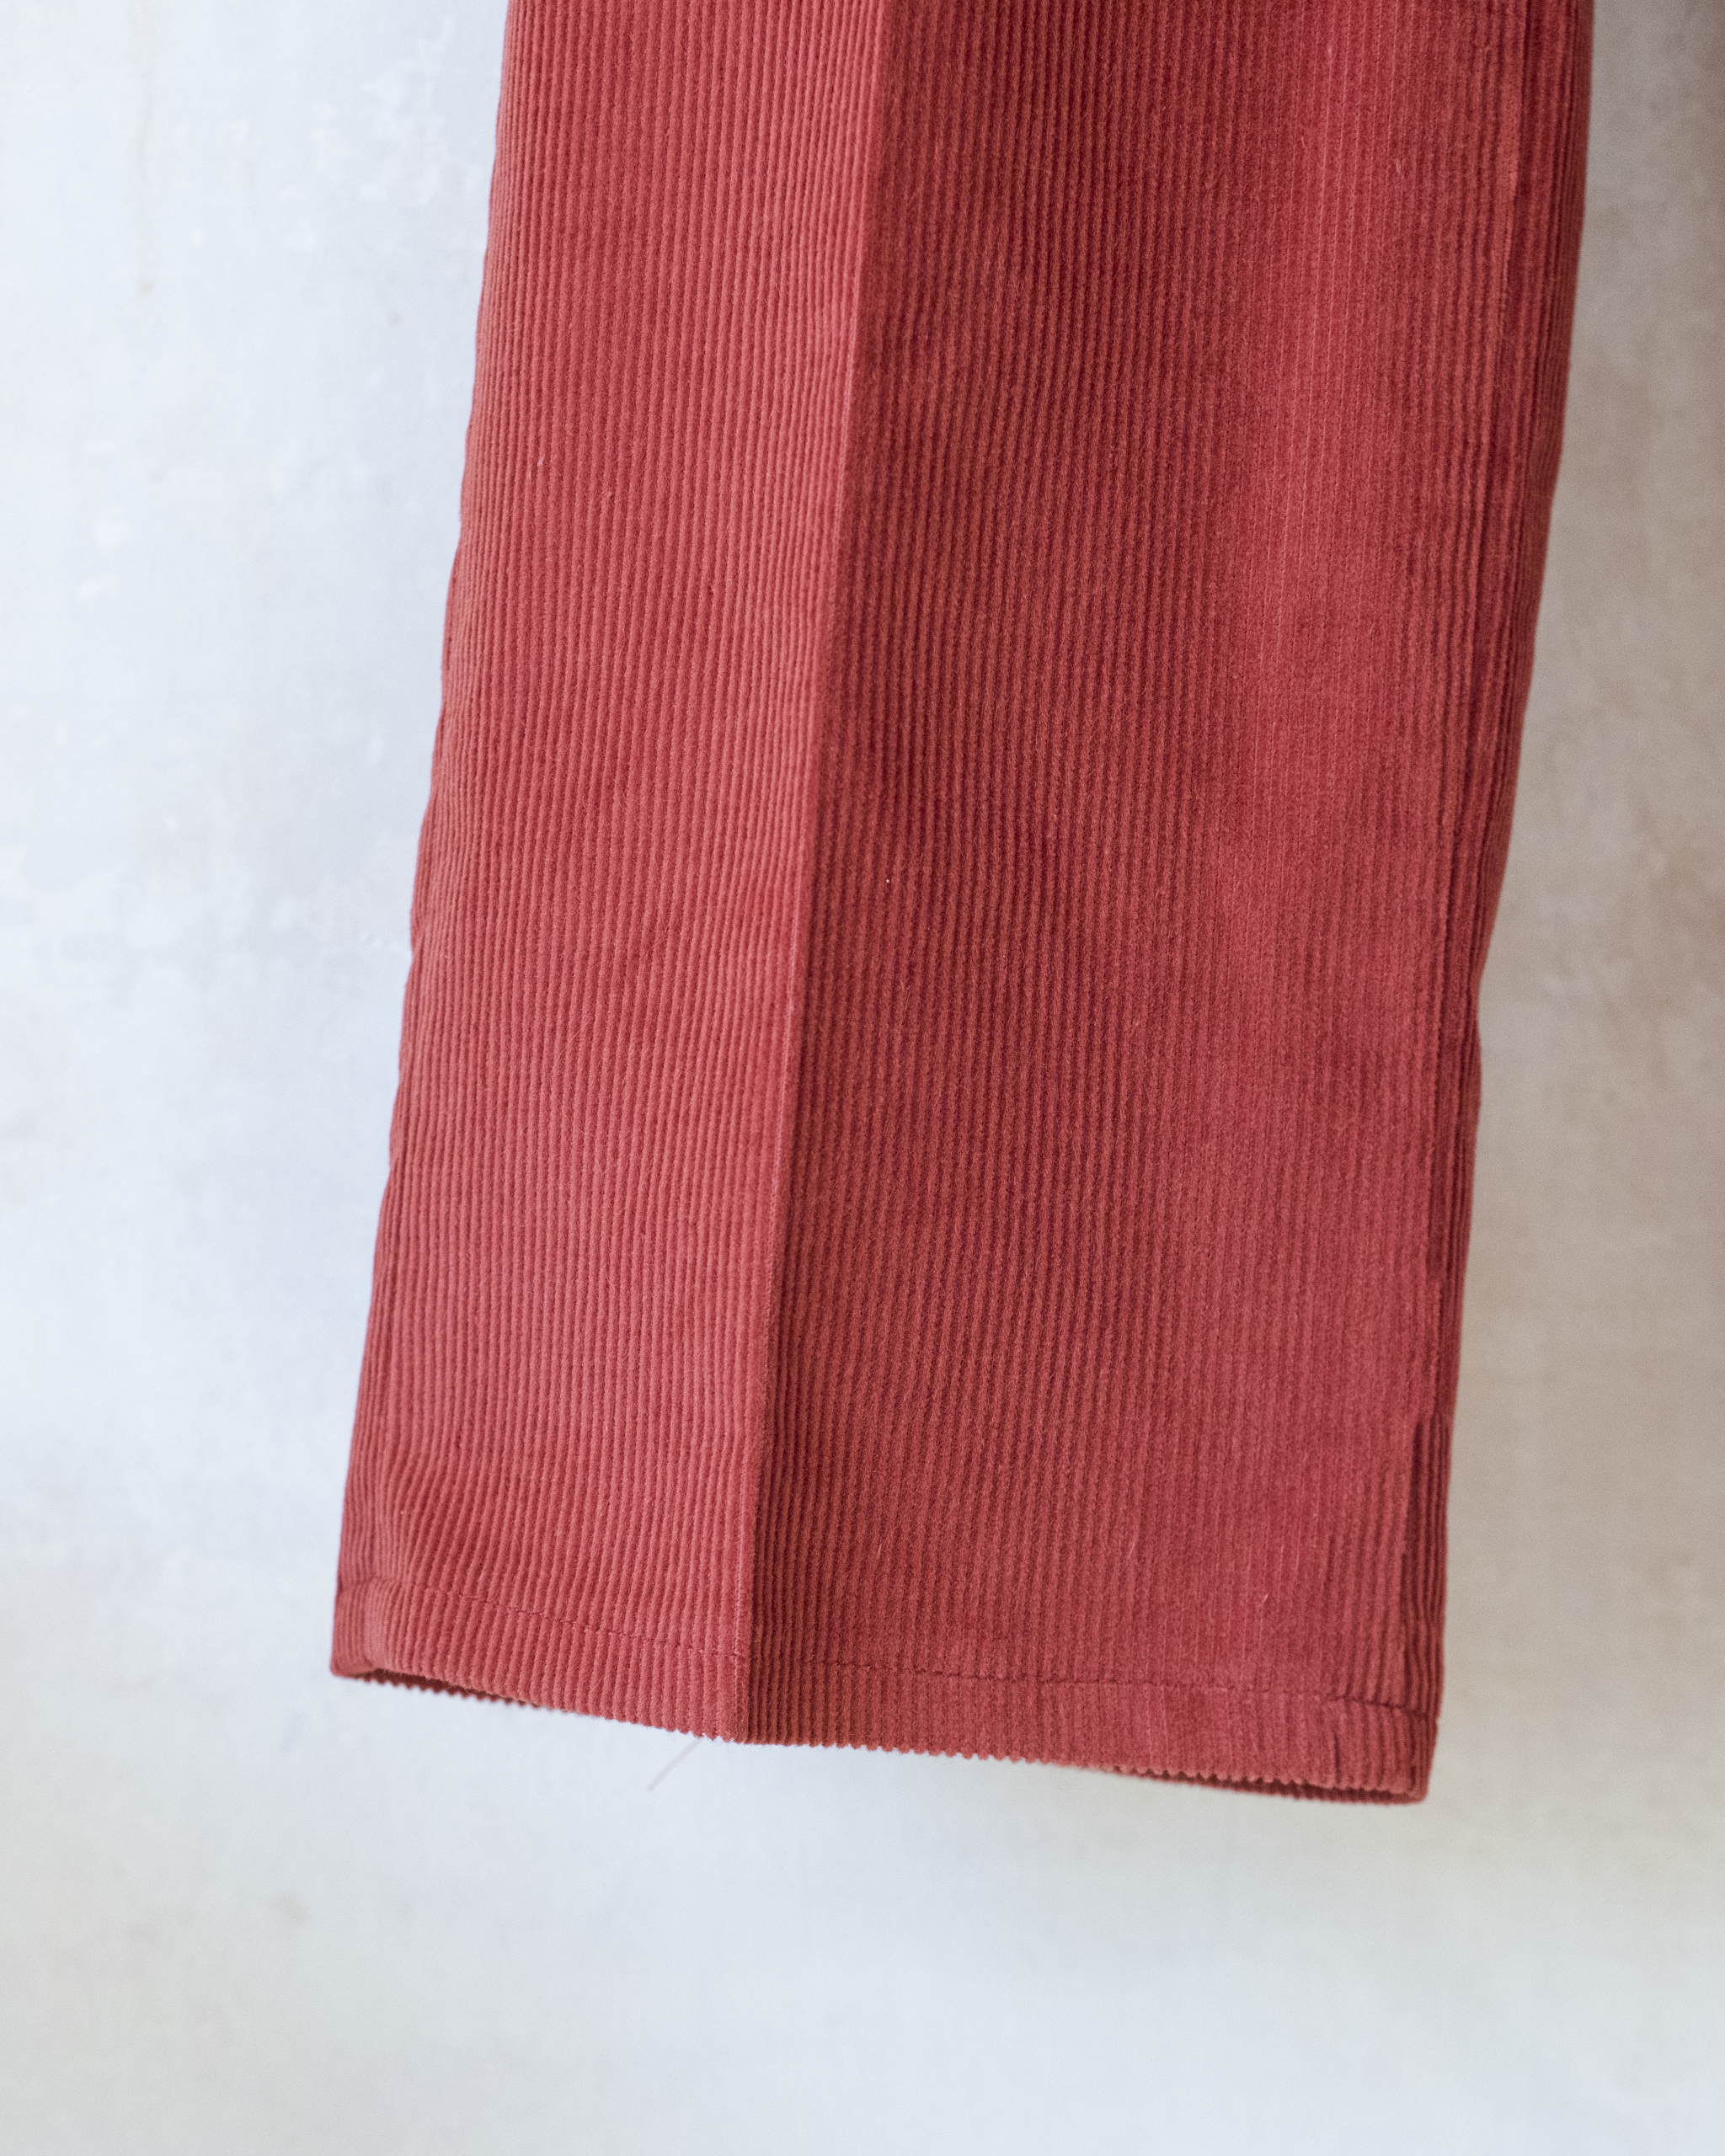 מכנסי קורדרוי בצבע חמרה מהסבנטיז | 10-11 שנים